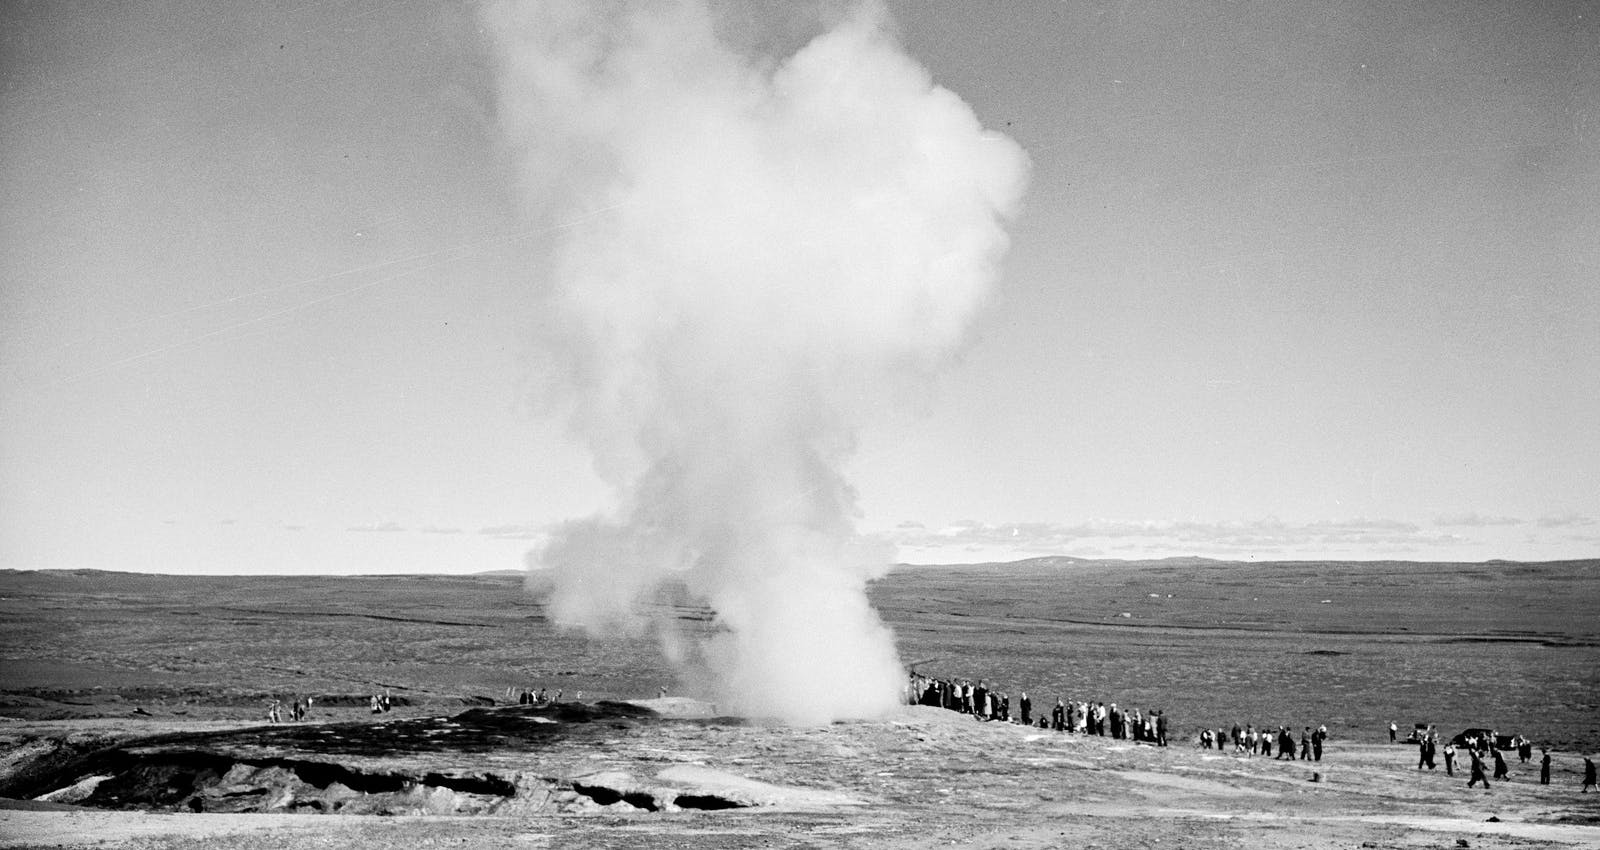 Geysir eruption in the 20th Century